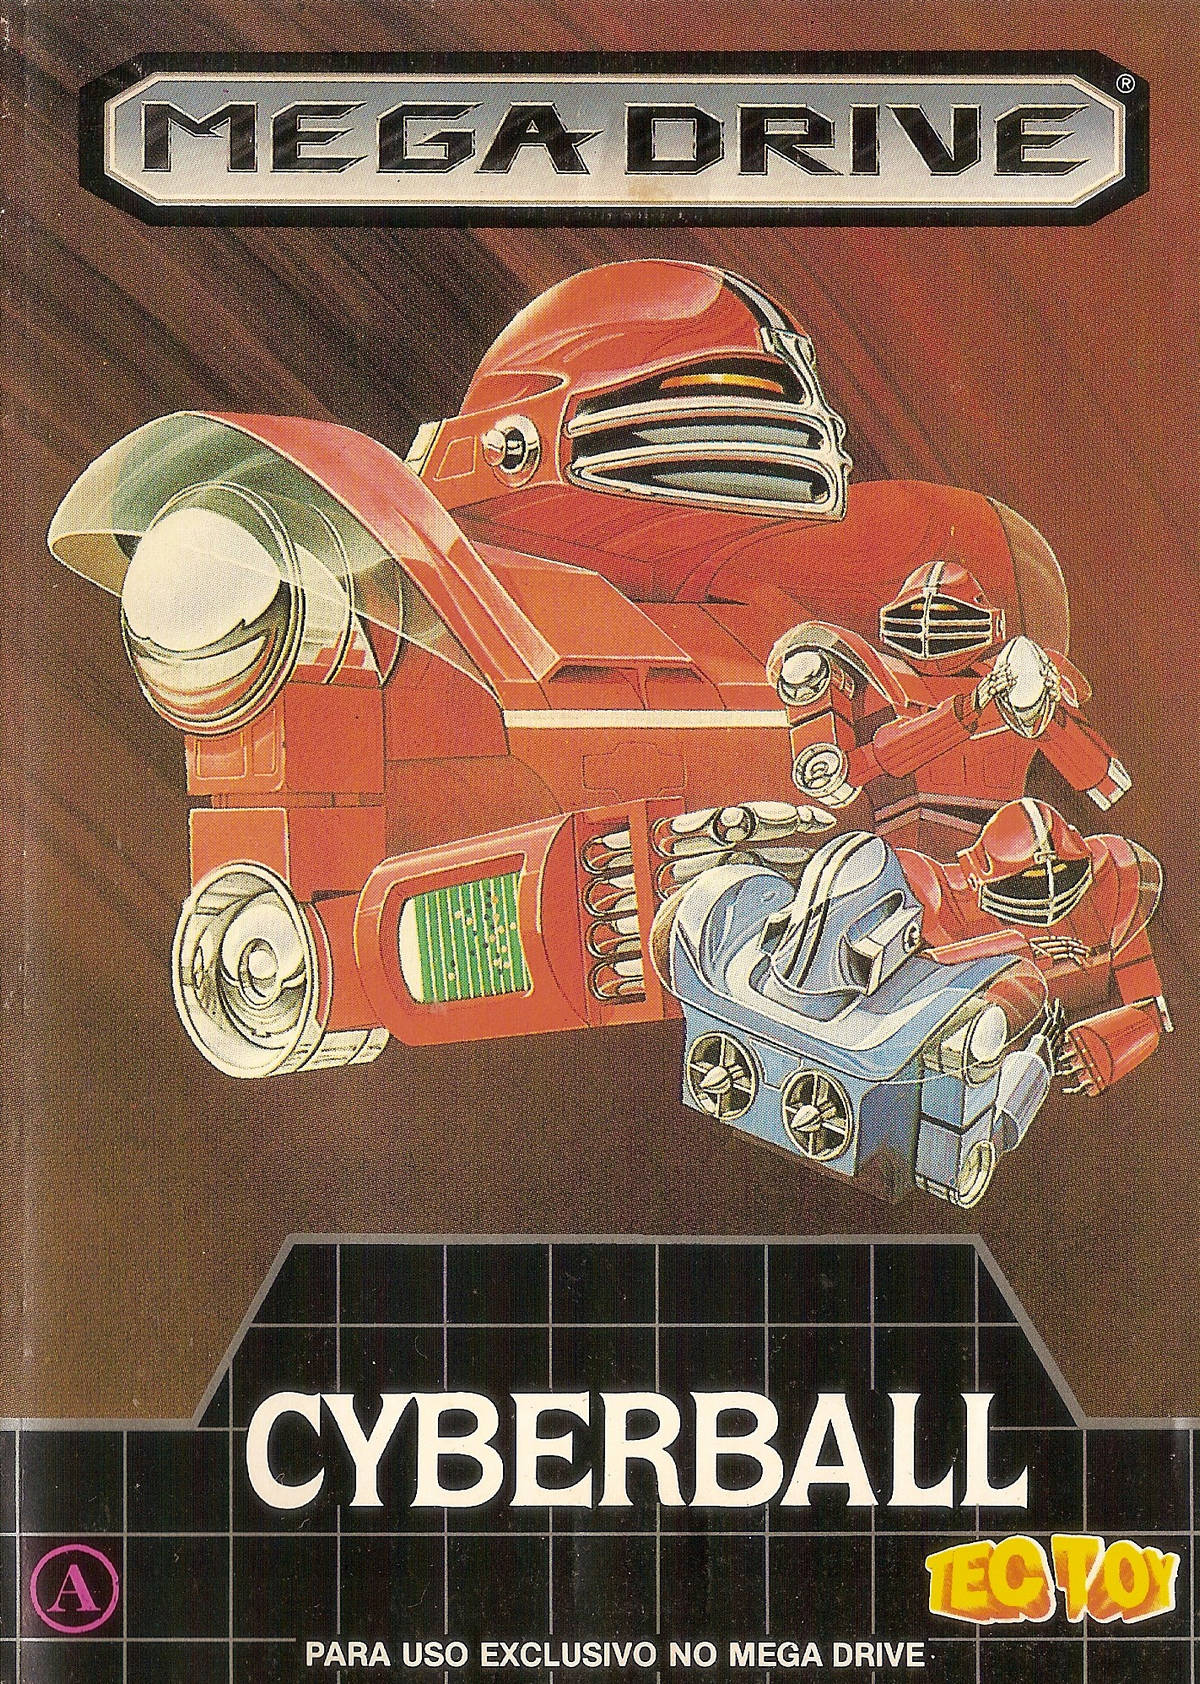 Capa do jogo CyberBall